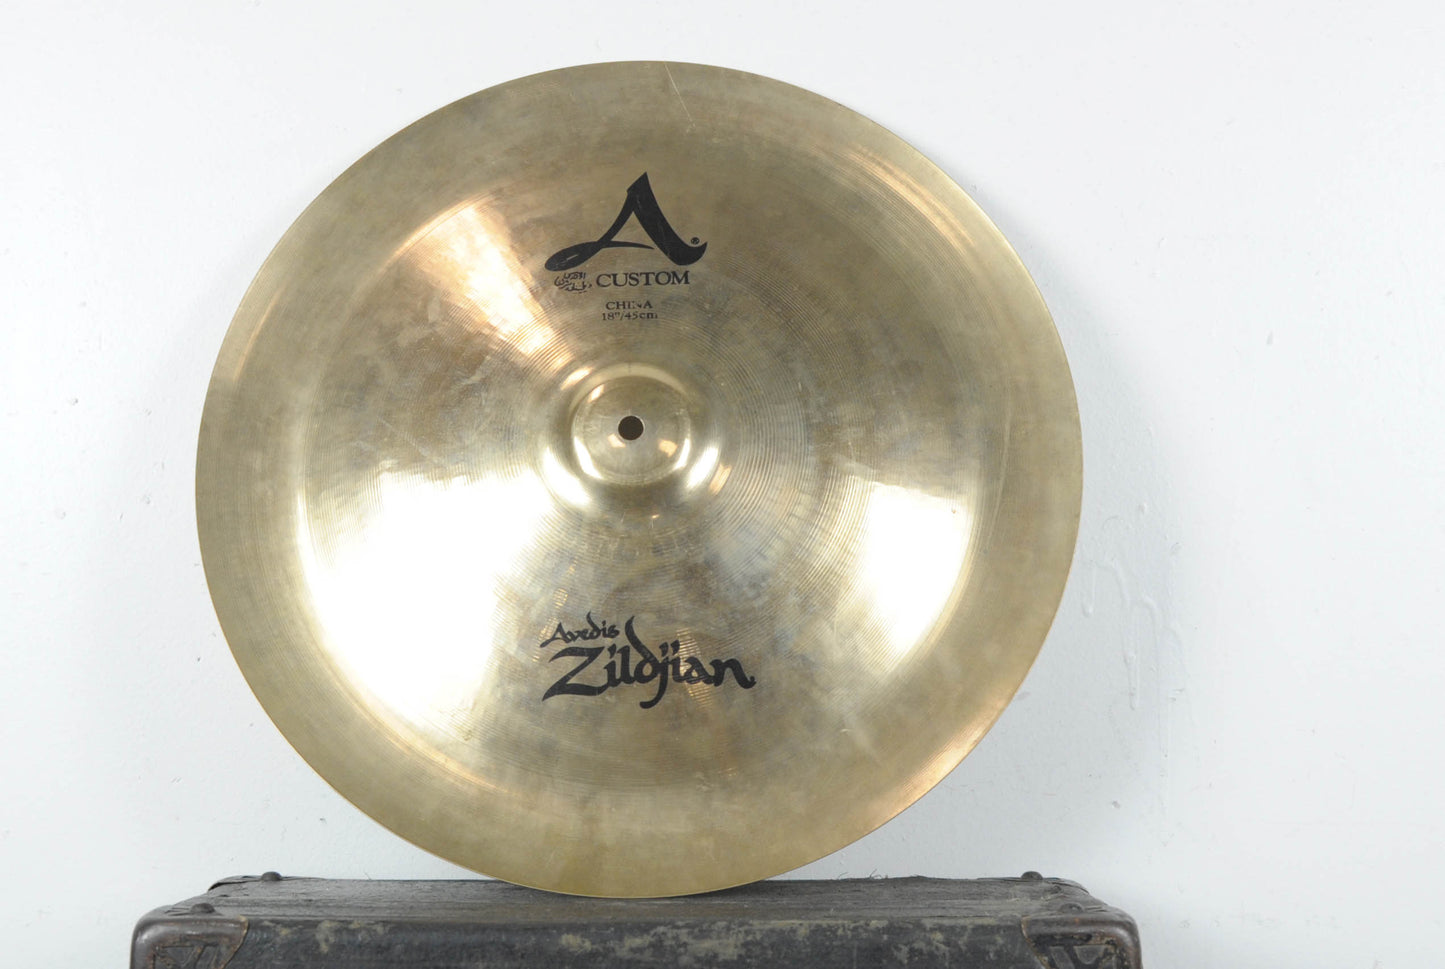 Zildjian 18" A Custom China Cymbal 1279g